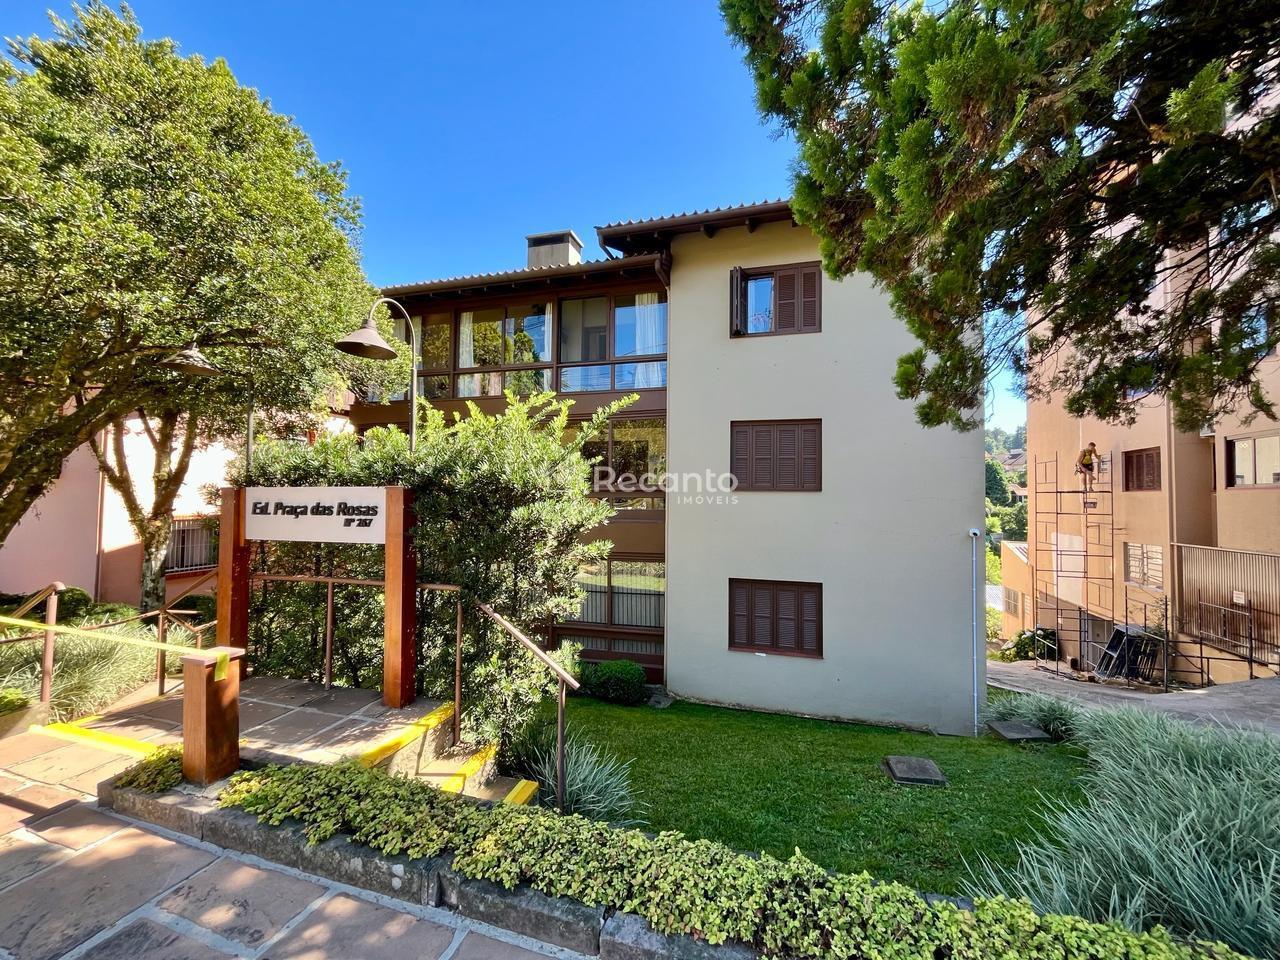 Apartamento em Minuano, Gramado/RS de 96m² 3 quartos à venda por R$ 1.483.000,00